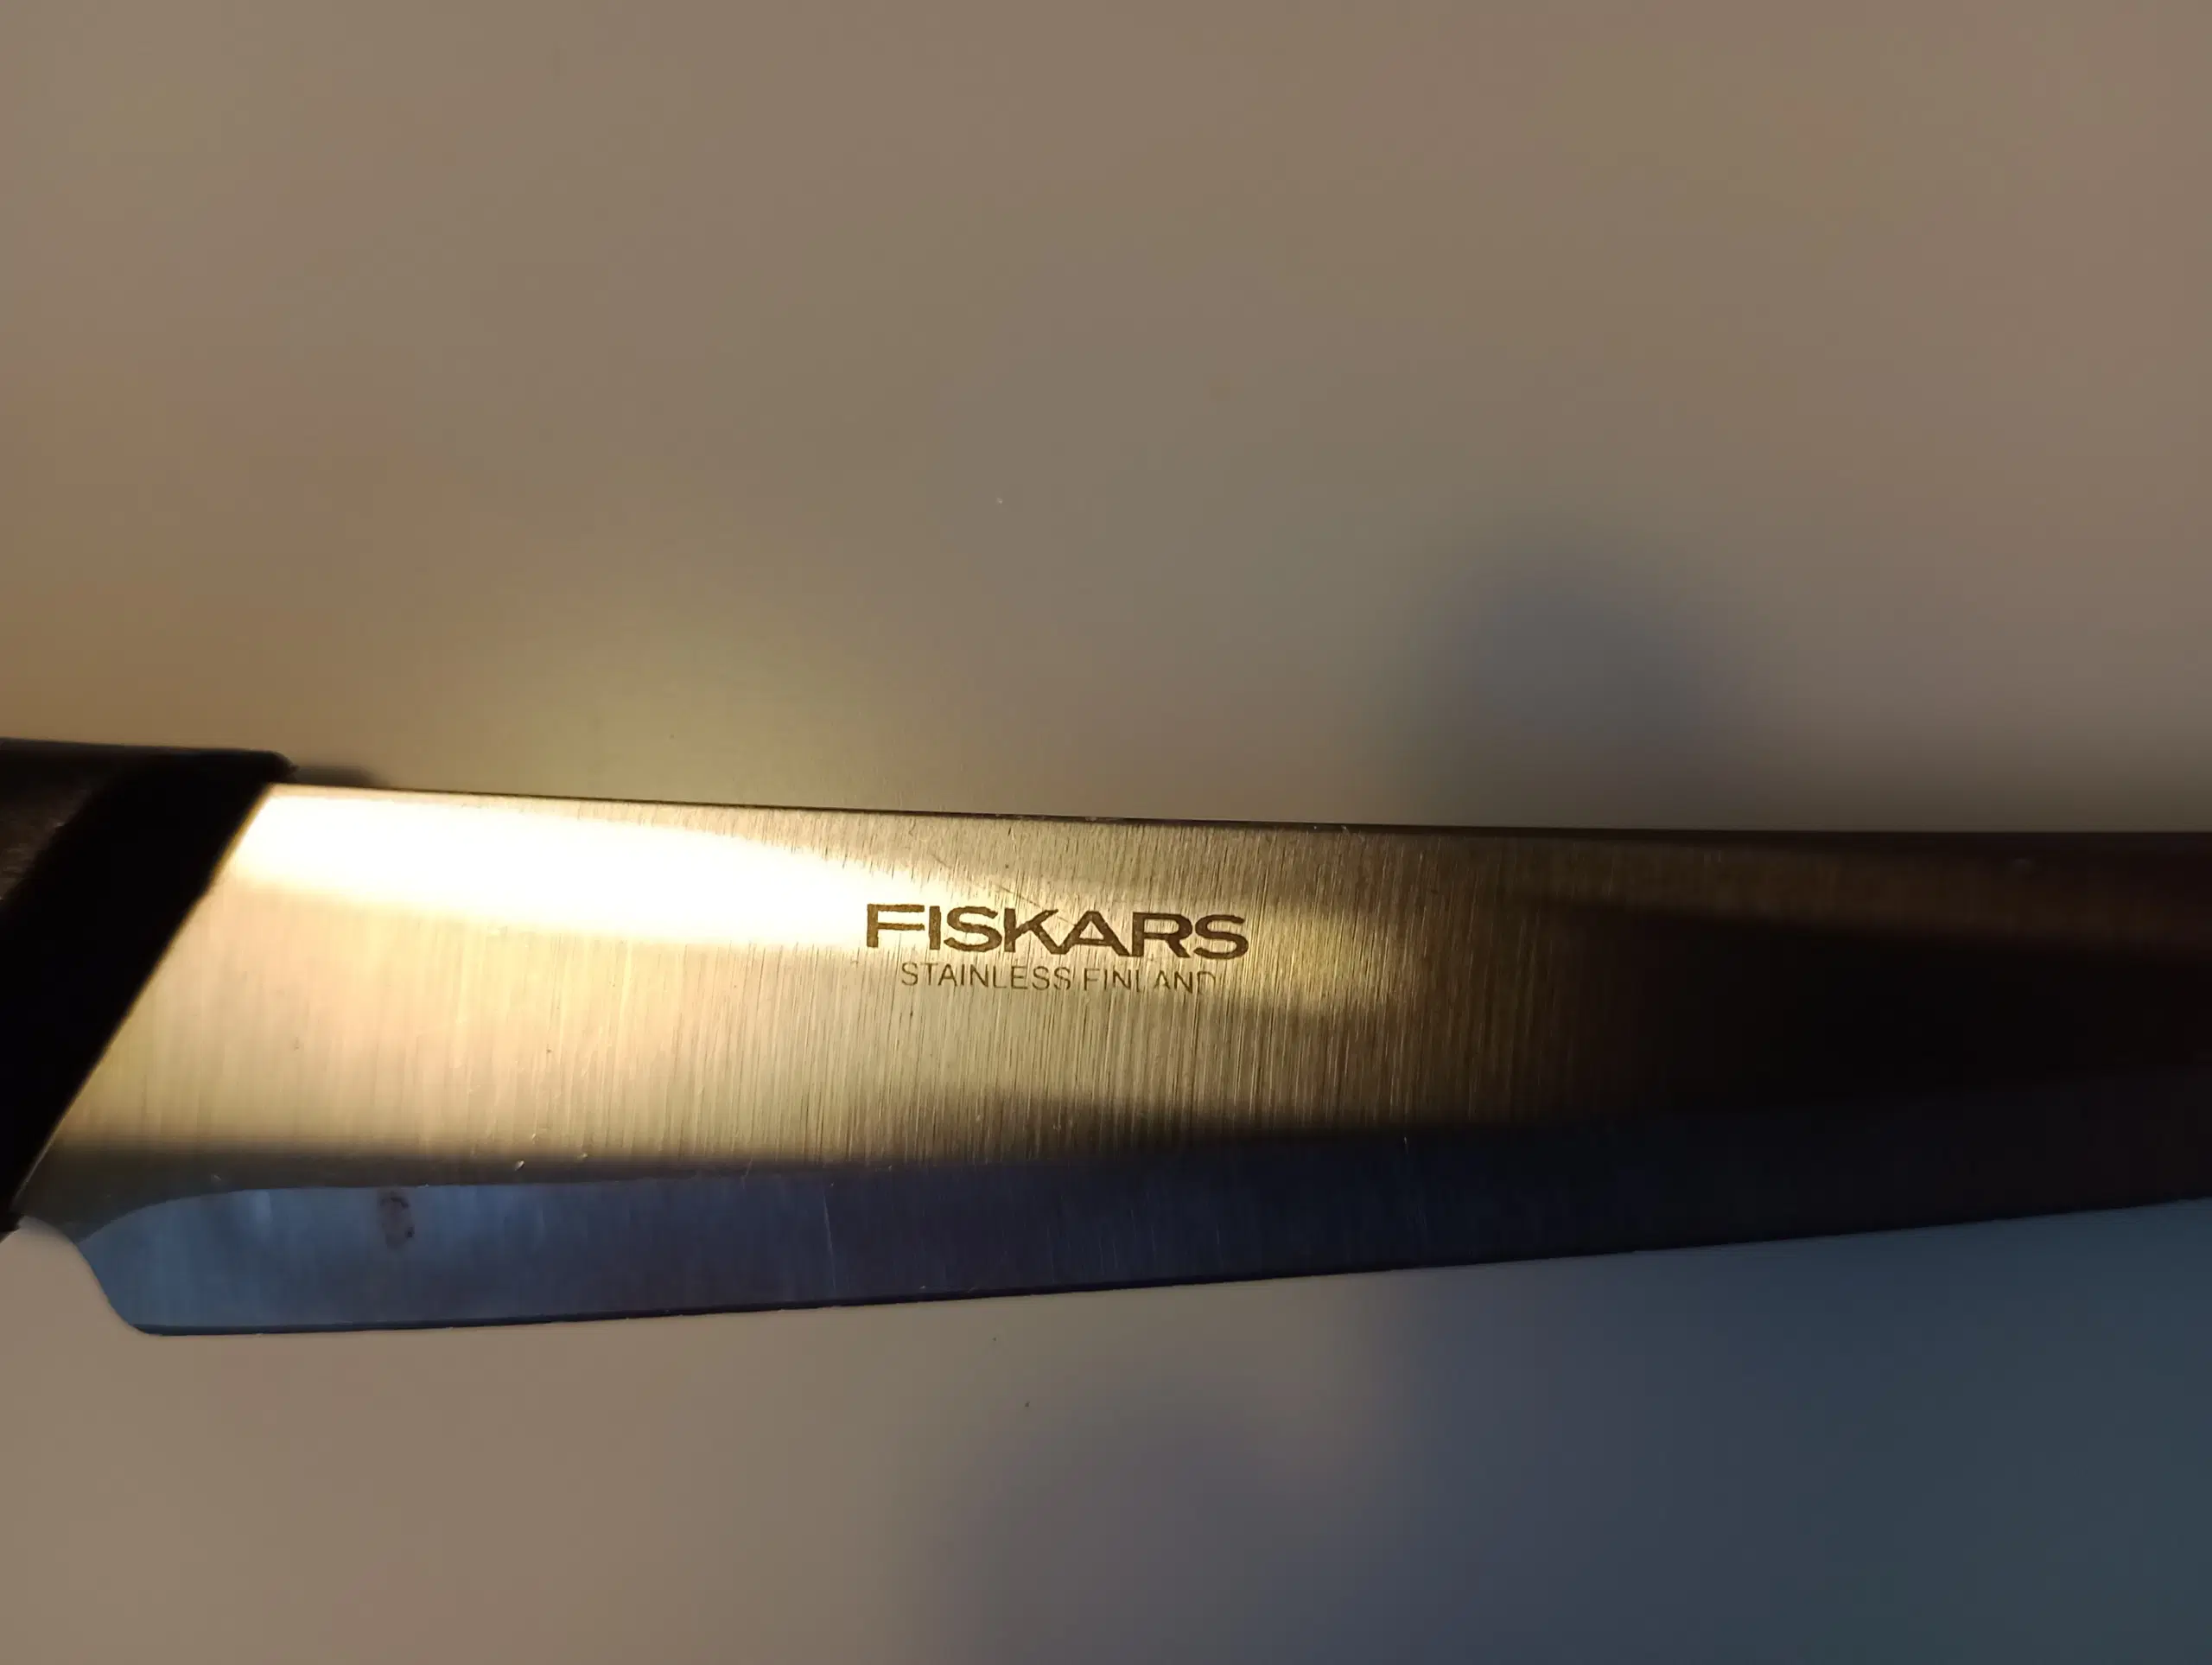 5 Fiskars knive for 100 kr